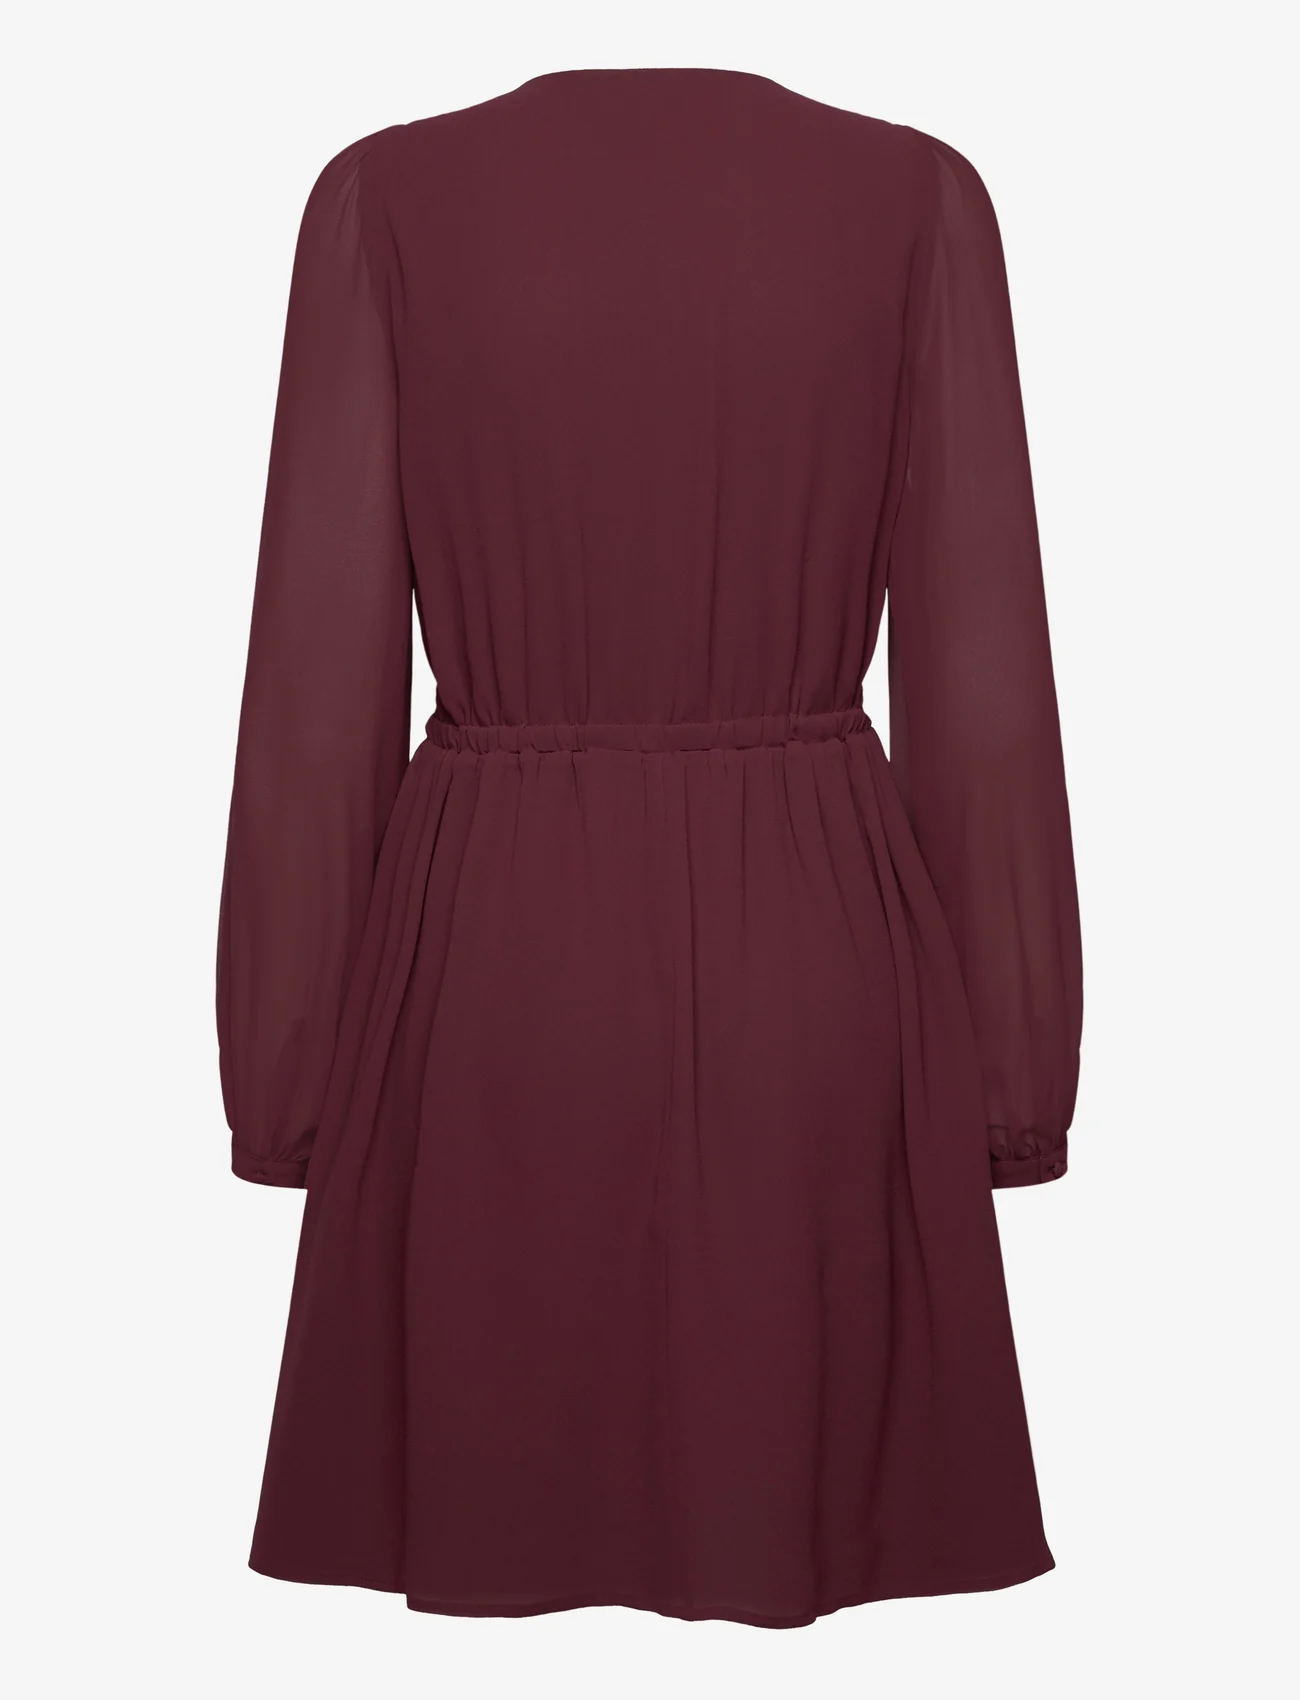 Esprit Casual - Dresses light woven - festkläder till outletpriser - bordeaux red - 1